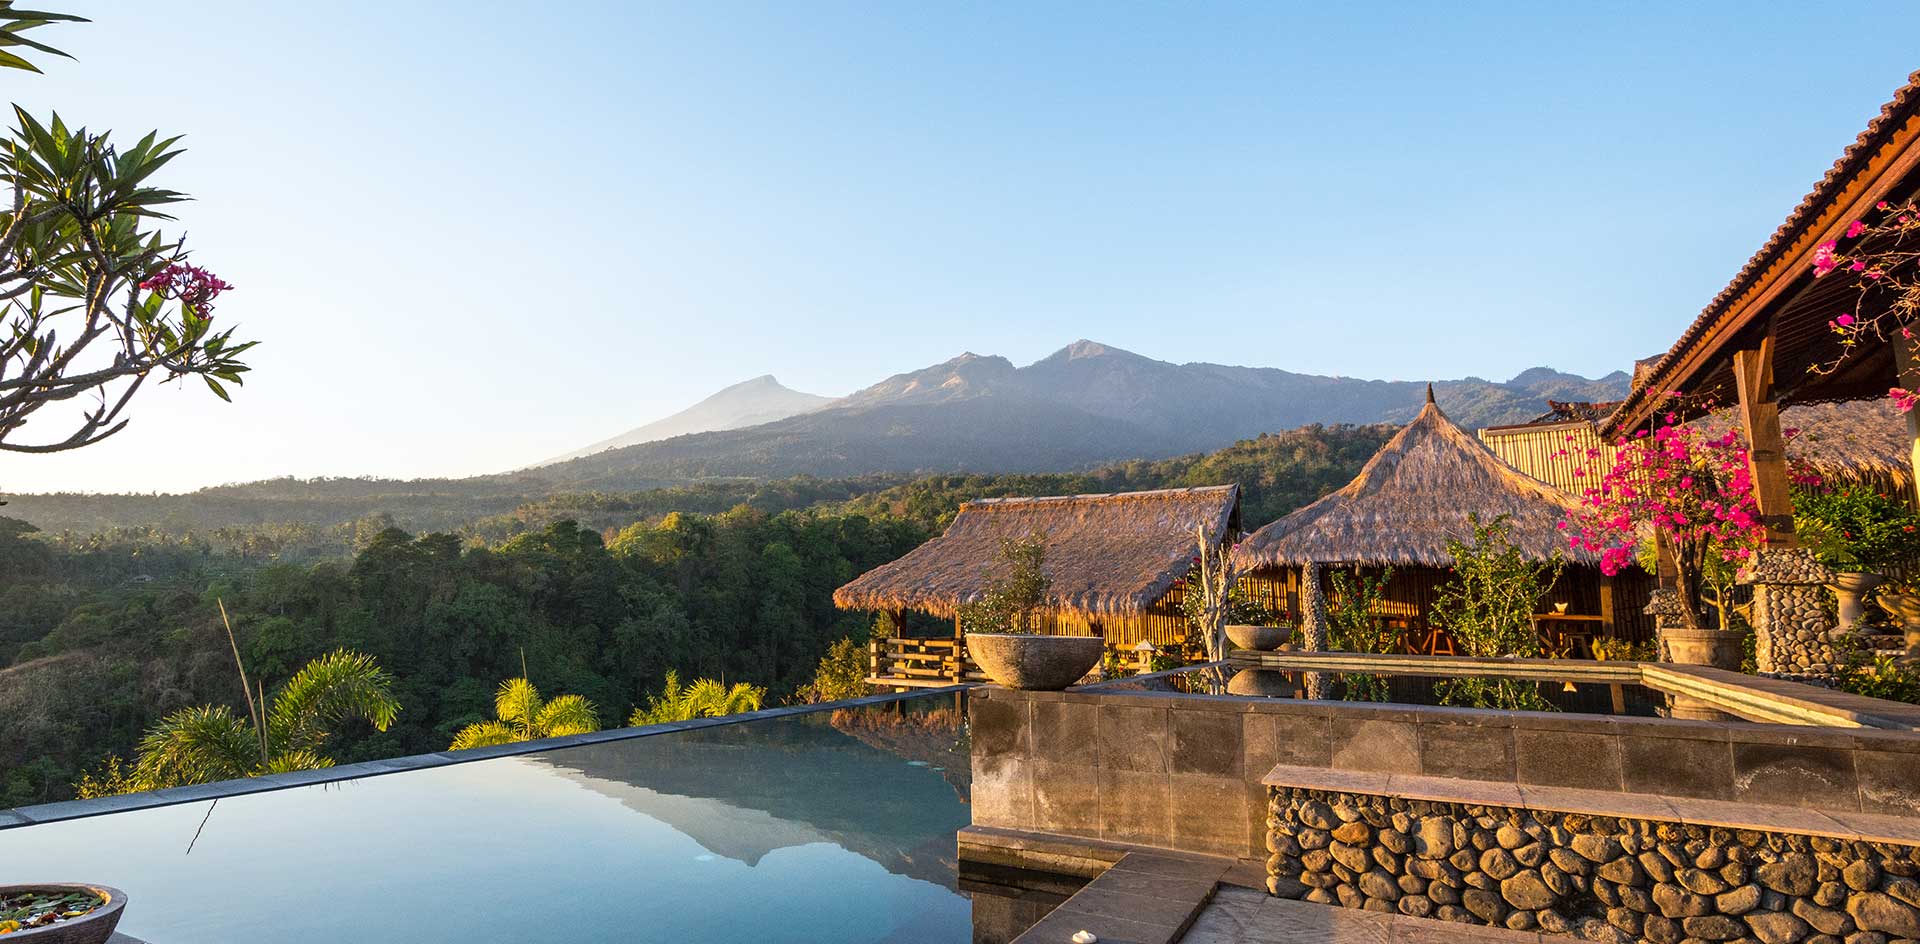 عشرة فنادق مذهلة وسط الطبيعة في اندونيسيا